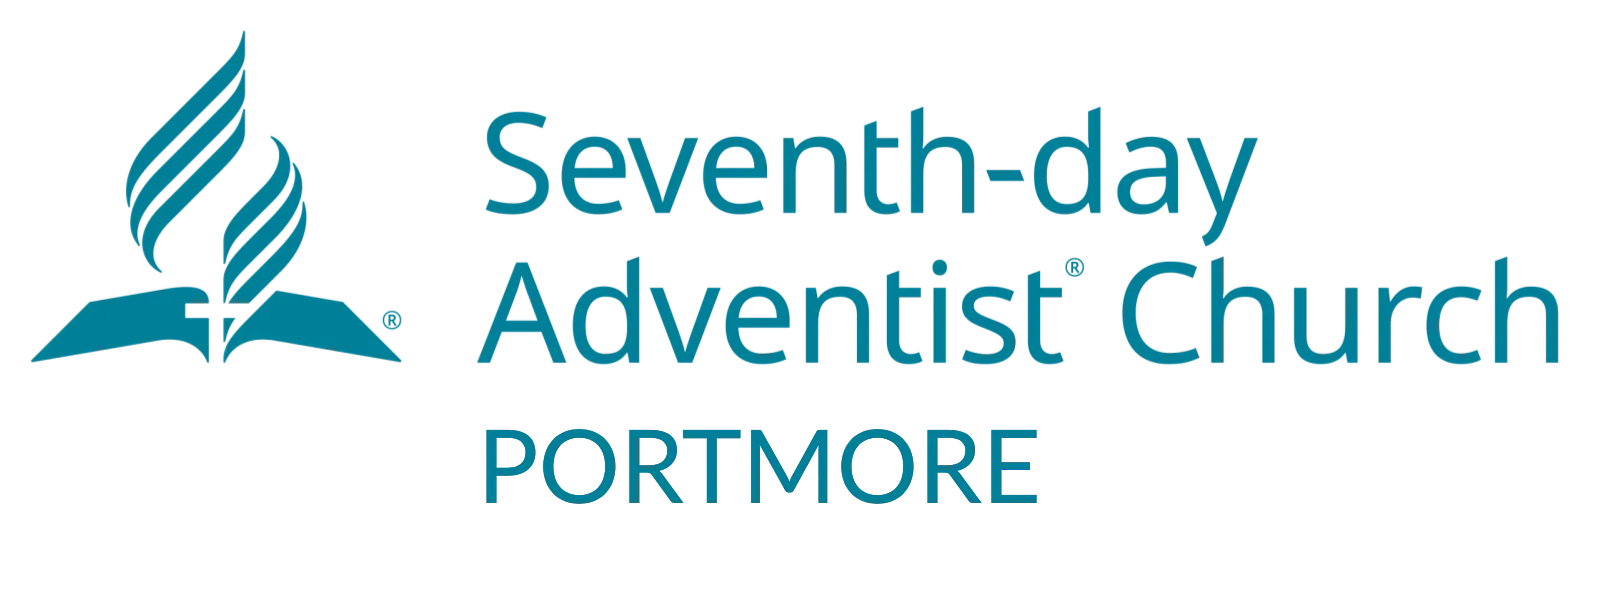 Portmore Seventh-day Adventist Church